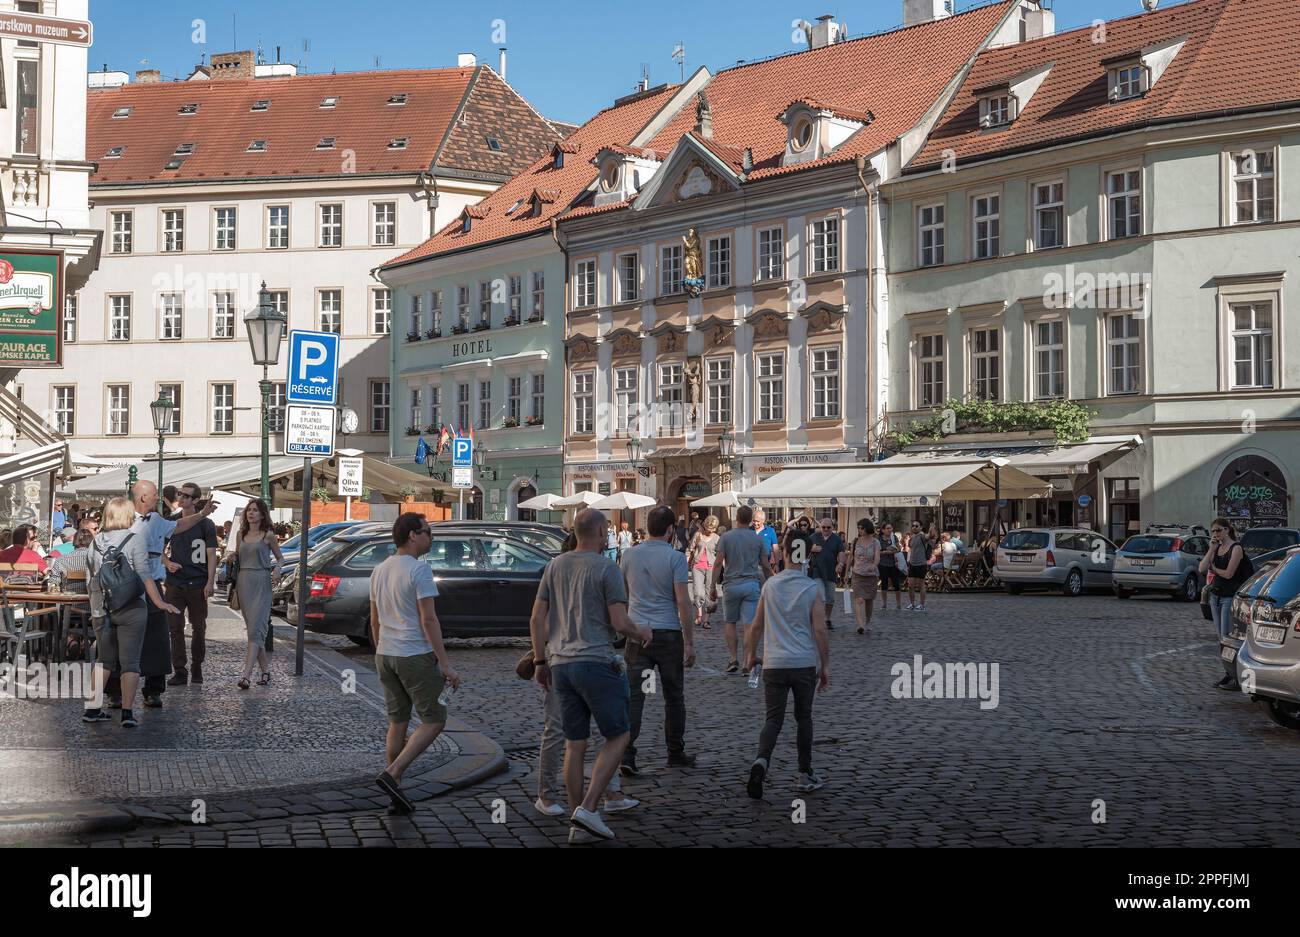 Praga, Repubblica Ceca - 17 maggio 2019: Folle di turisti in piazza Betlemme (Betlemske namesti) Foto Stock